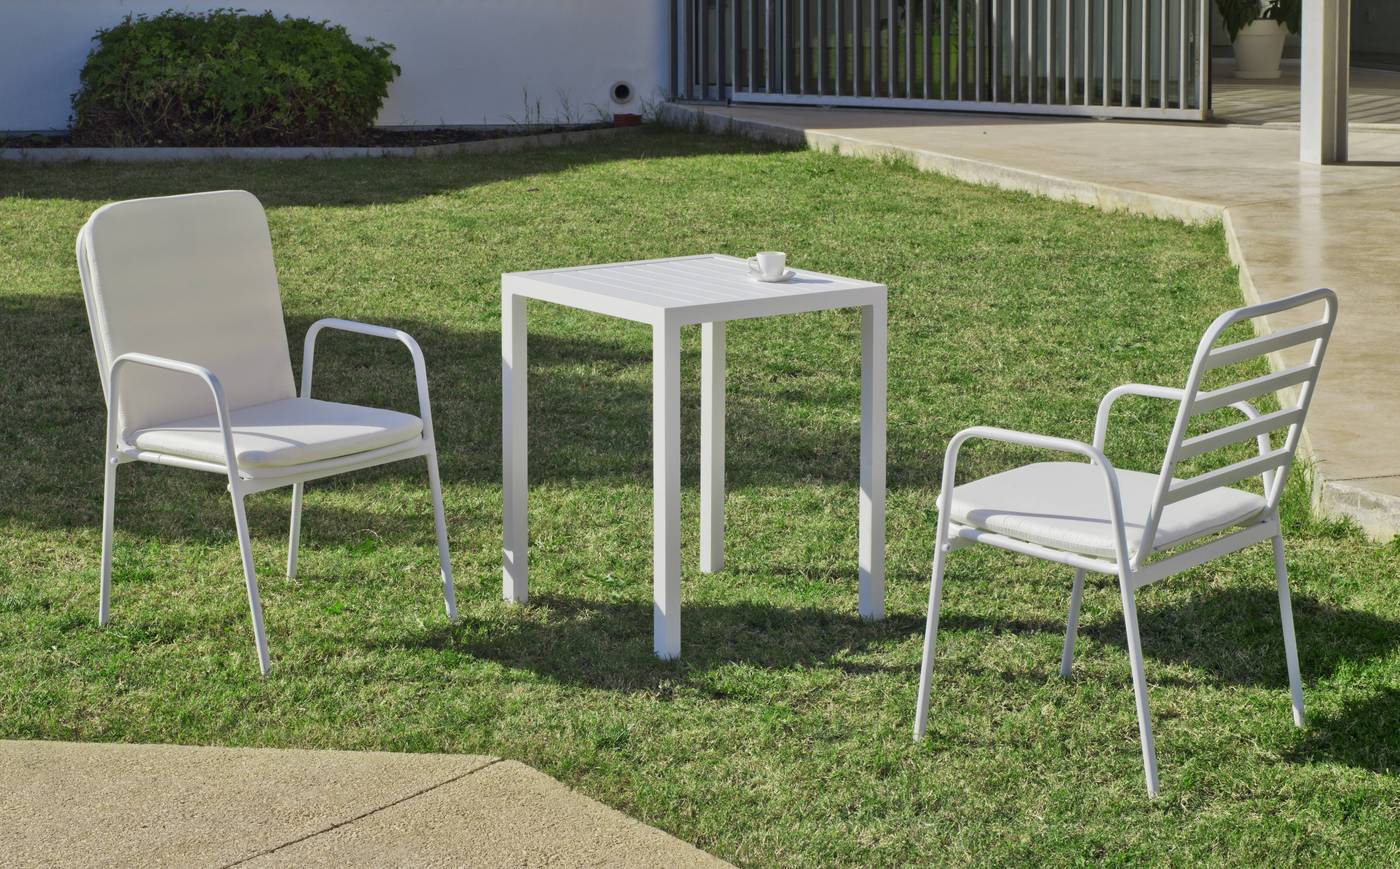 Conjunto apilable de aluminio luxe: mesa cuadrada de 65 cm. + 2 sillones. Disponible en color blanco y color antracita.